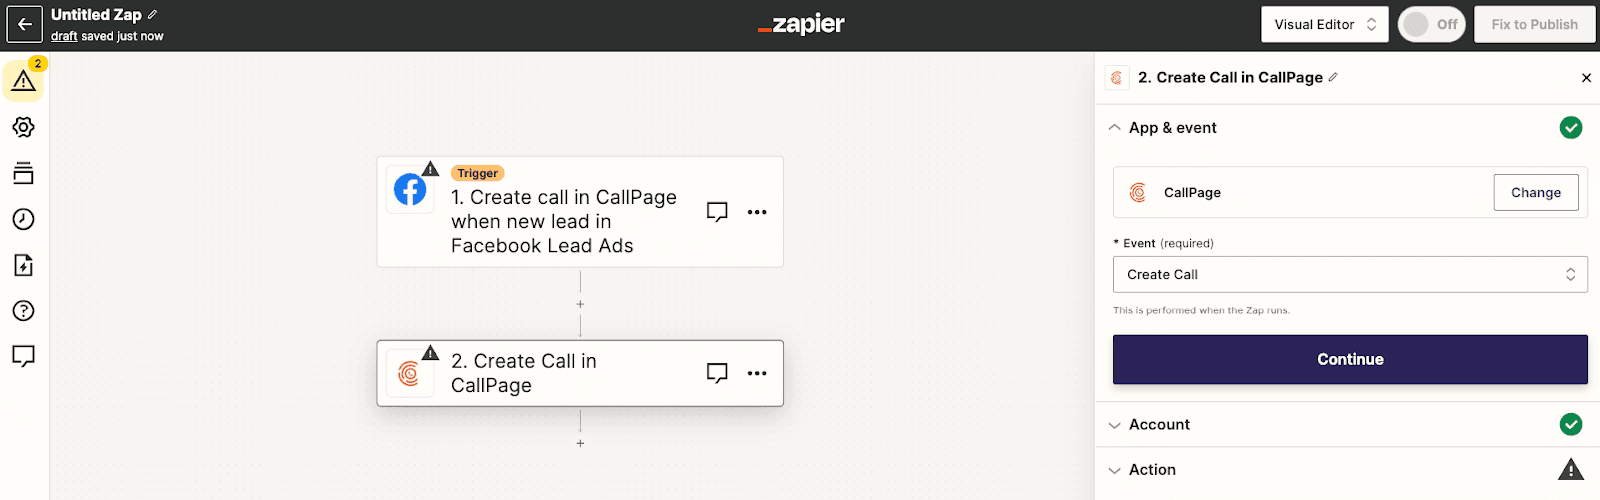 zapier-callpage